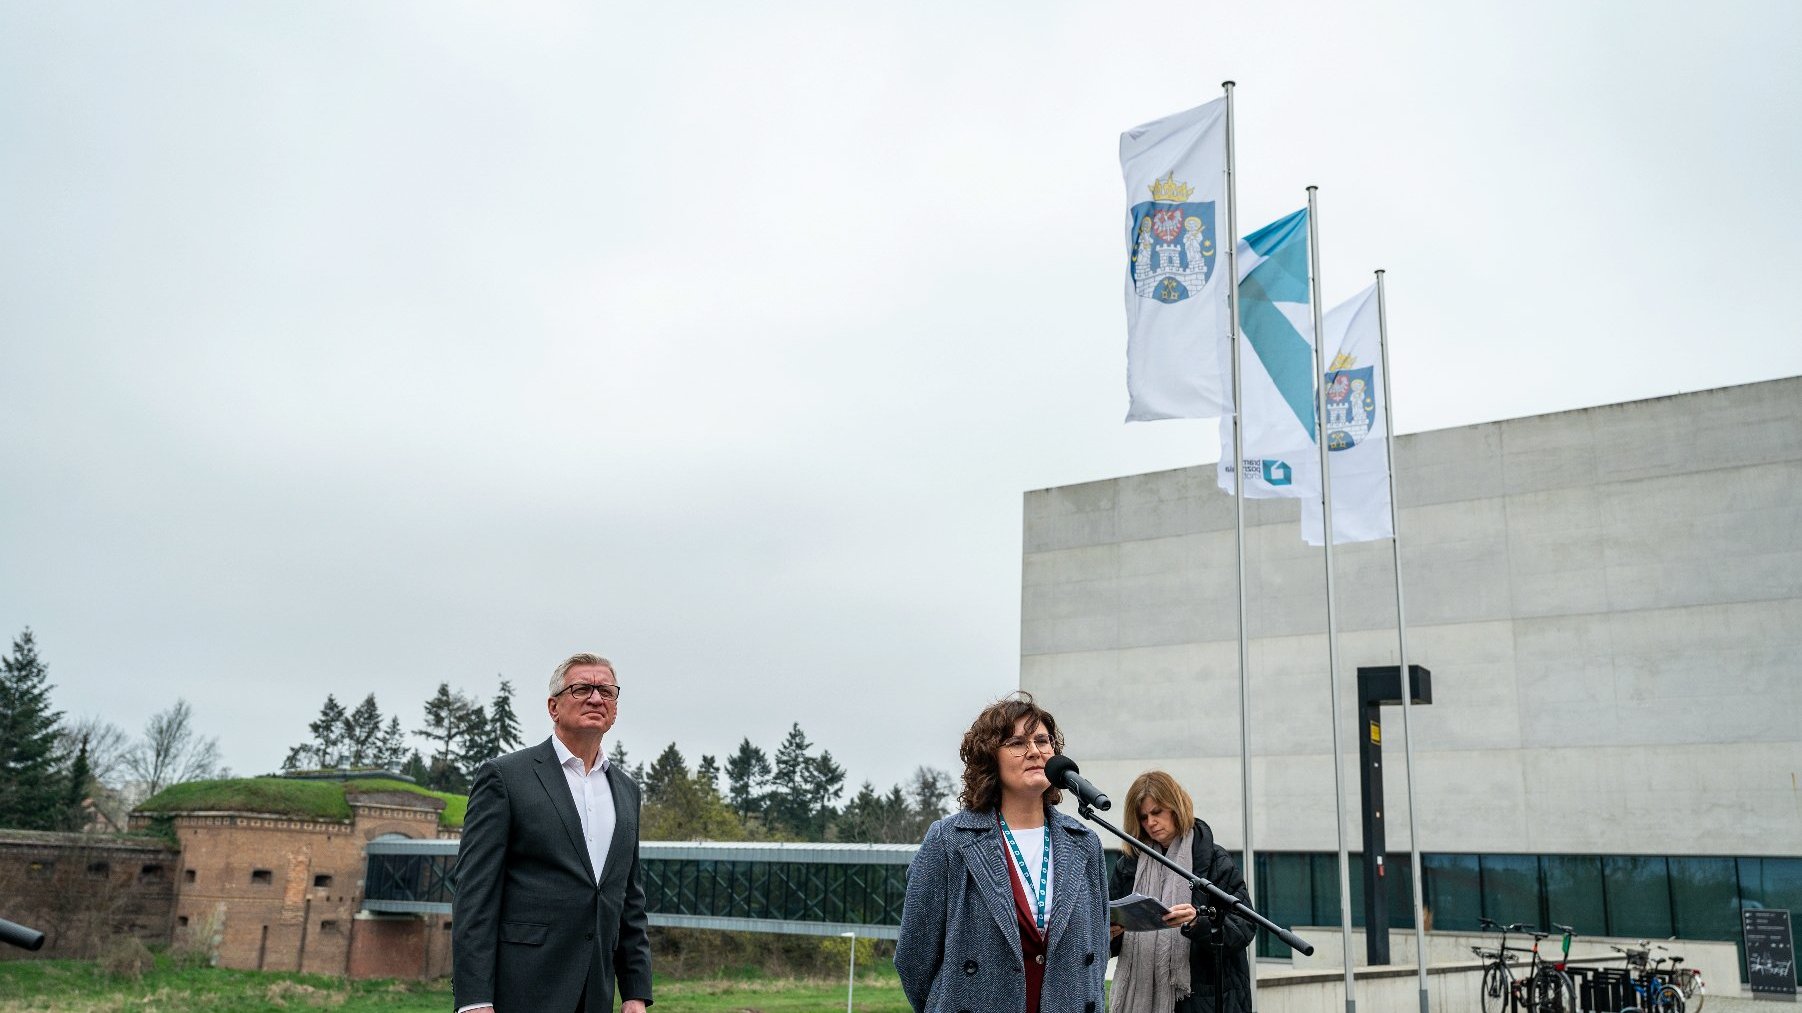 Od lewej: Jacek Jaśkowiak, prezydent Poznania, Monika Herkt, dyrektor Poznańskiego Centrum Dziedzictwa i Arleta Kolasińska z Fundacji Puenta.